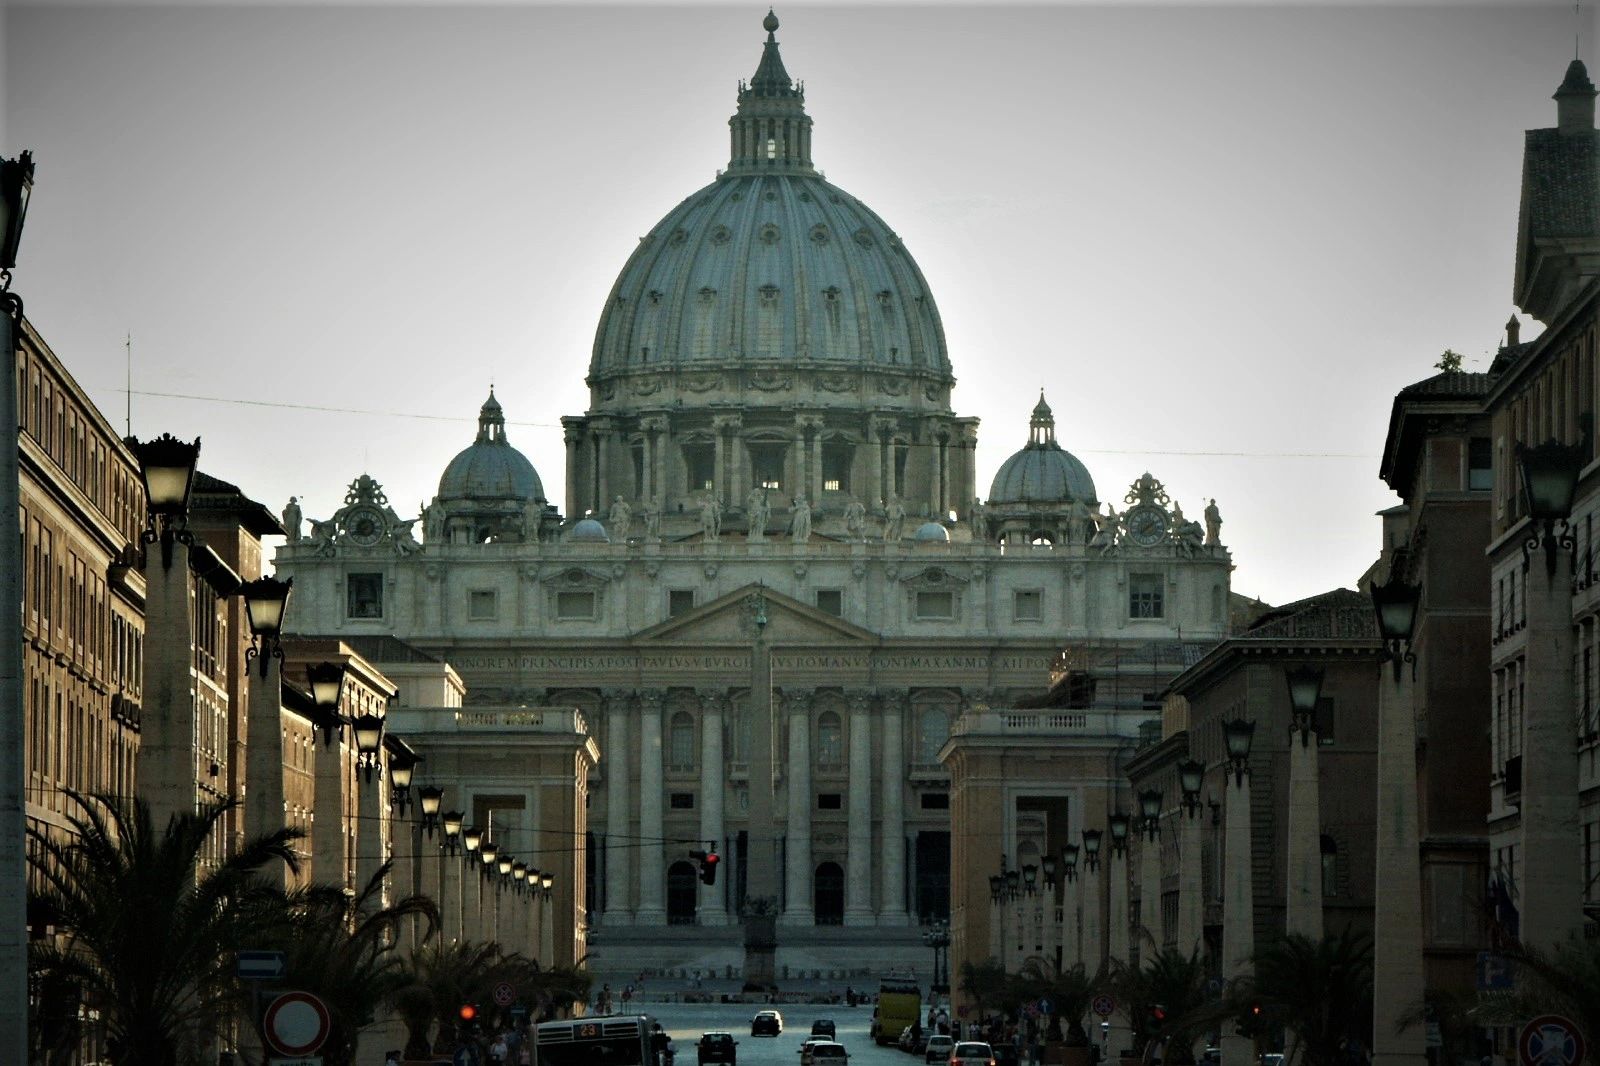 St. Peters in Vatican City